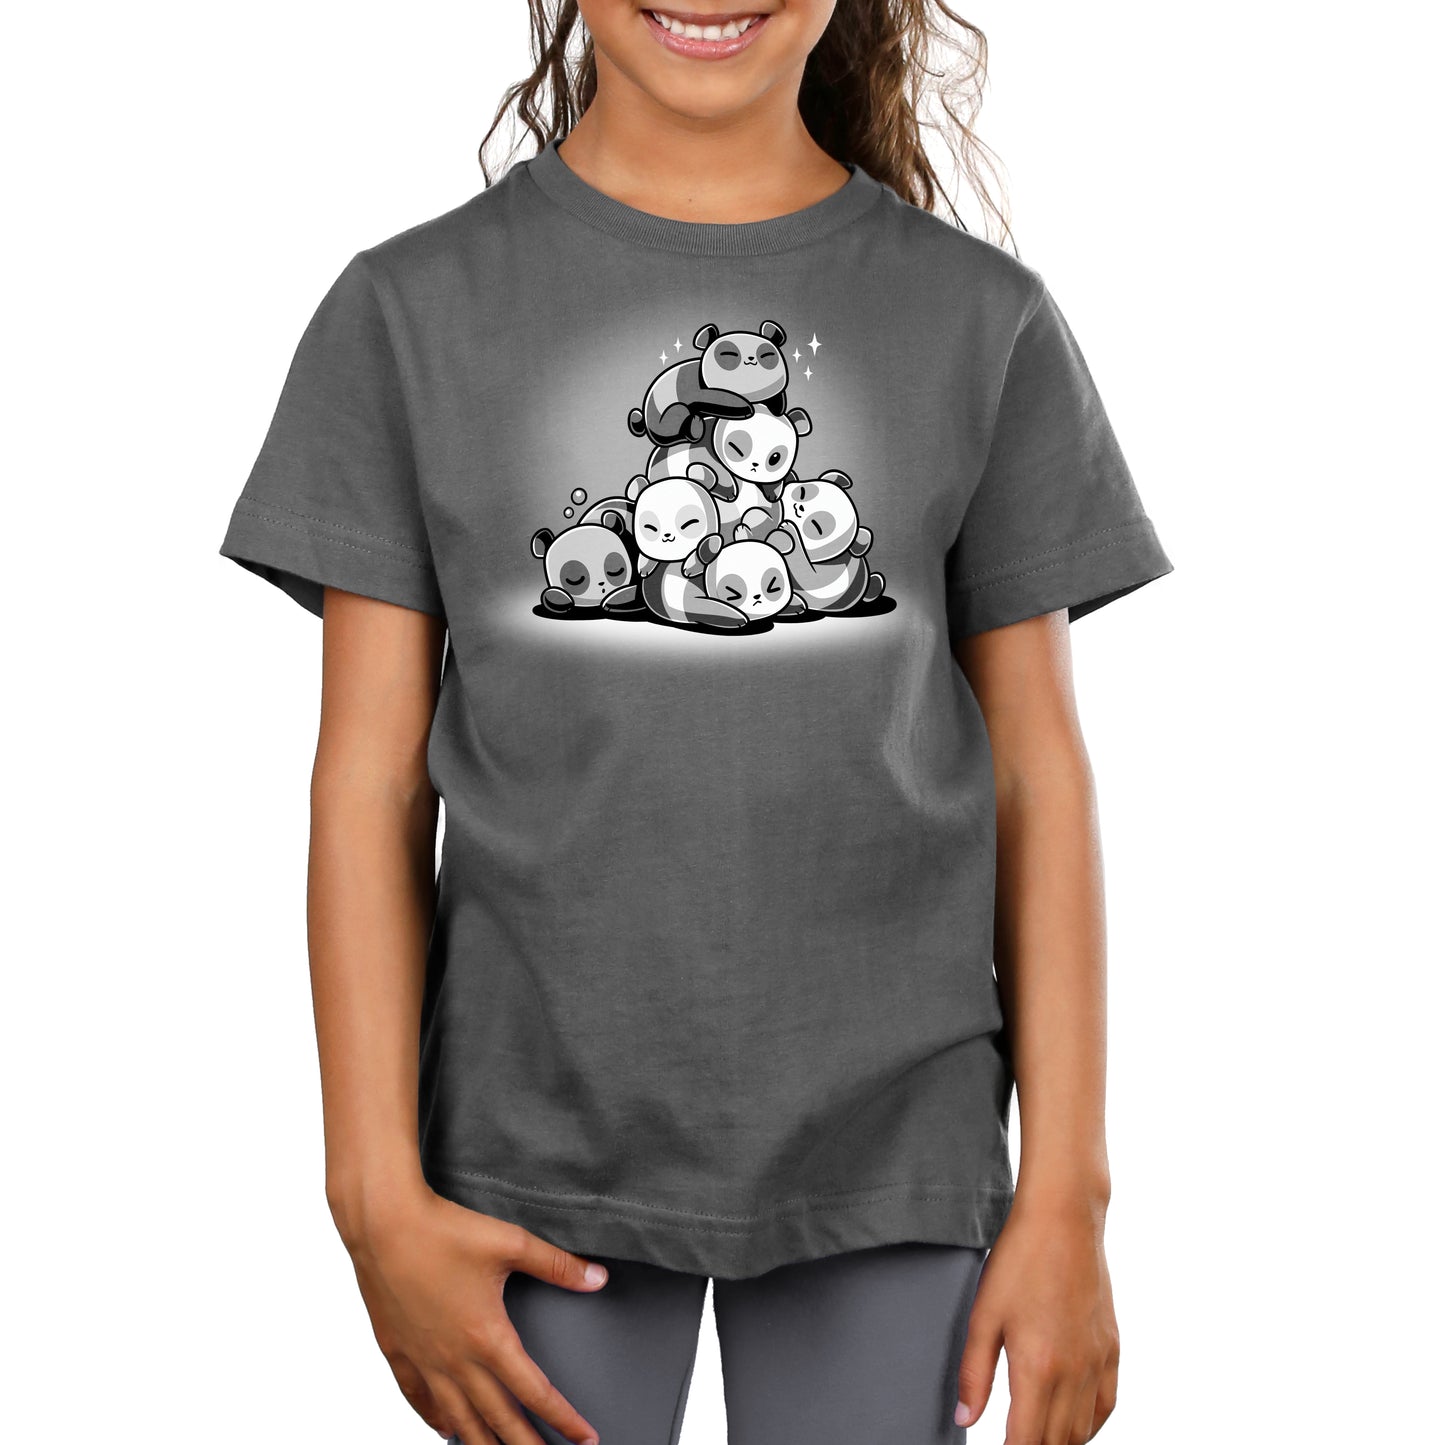 A TeeTurtle Panda Pile t-shirt worn by a girl.